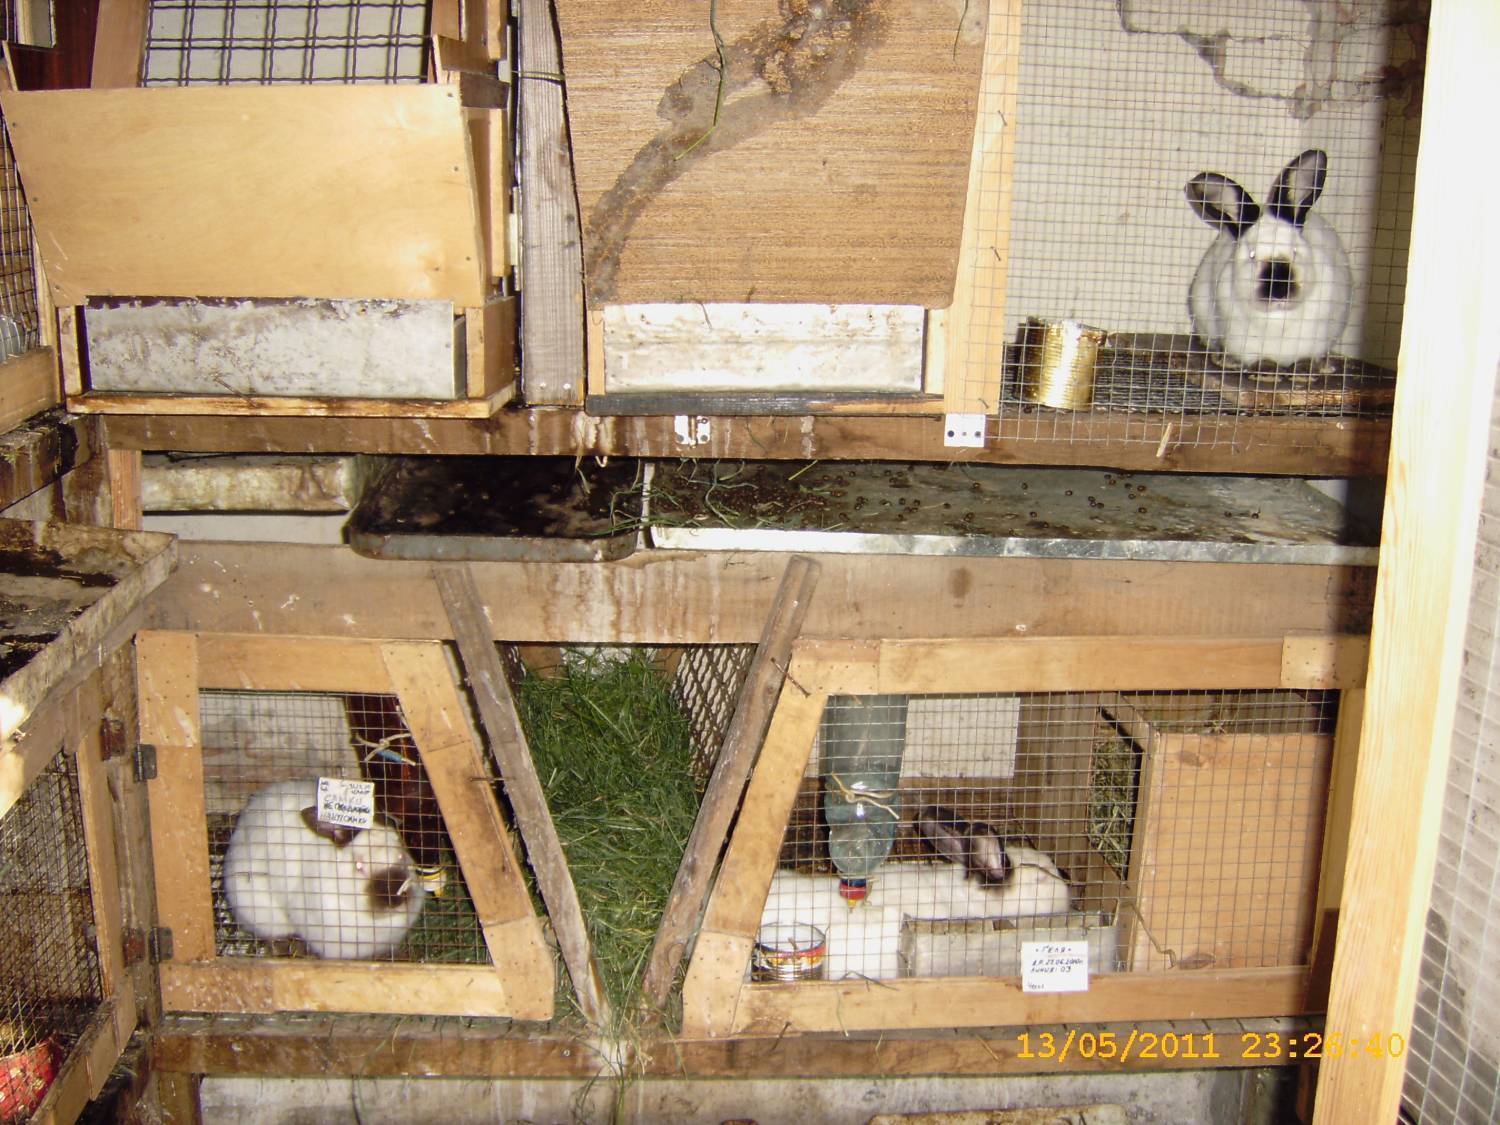 Разведение кроликов для начинающих: условия содержания х в домашних условиях, питание, выбор породы